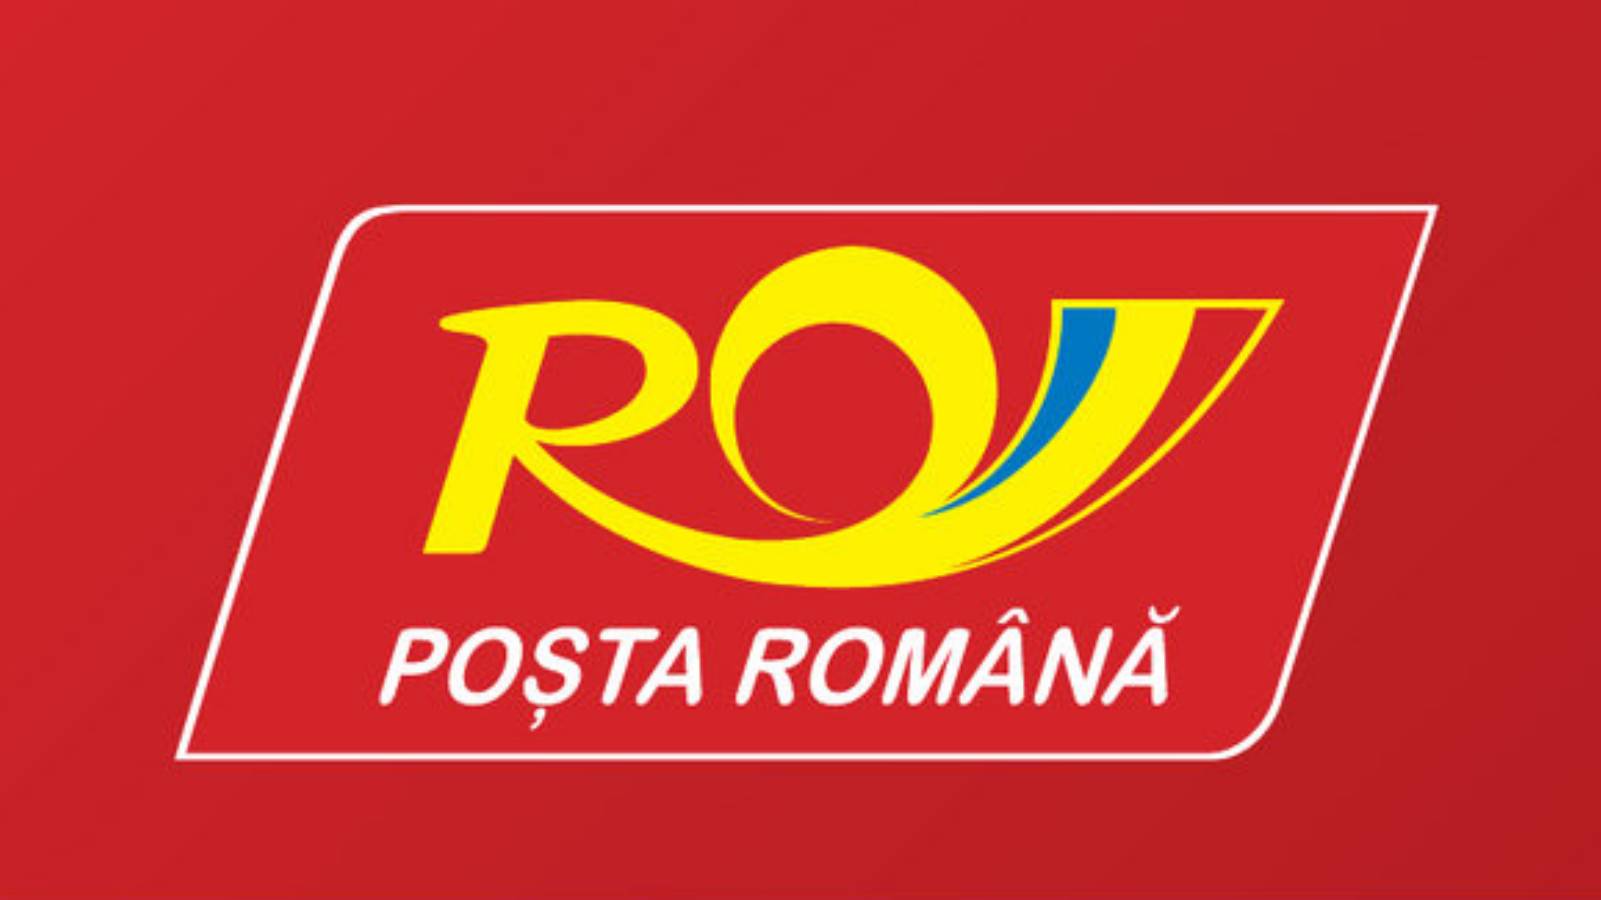 Tráfico postal rumano Gran Bretaña